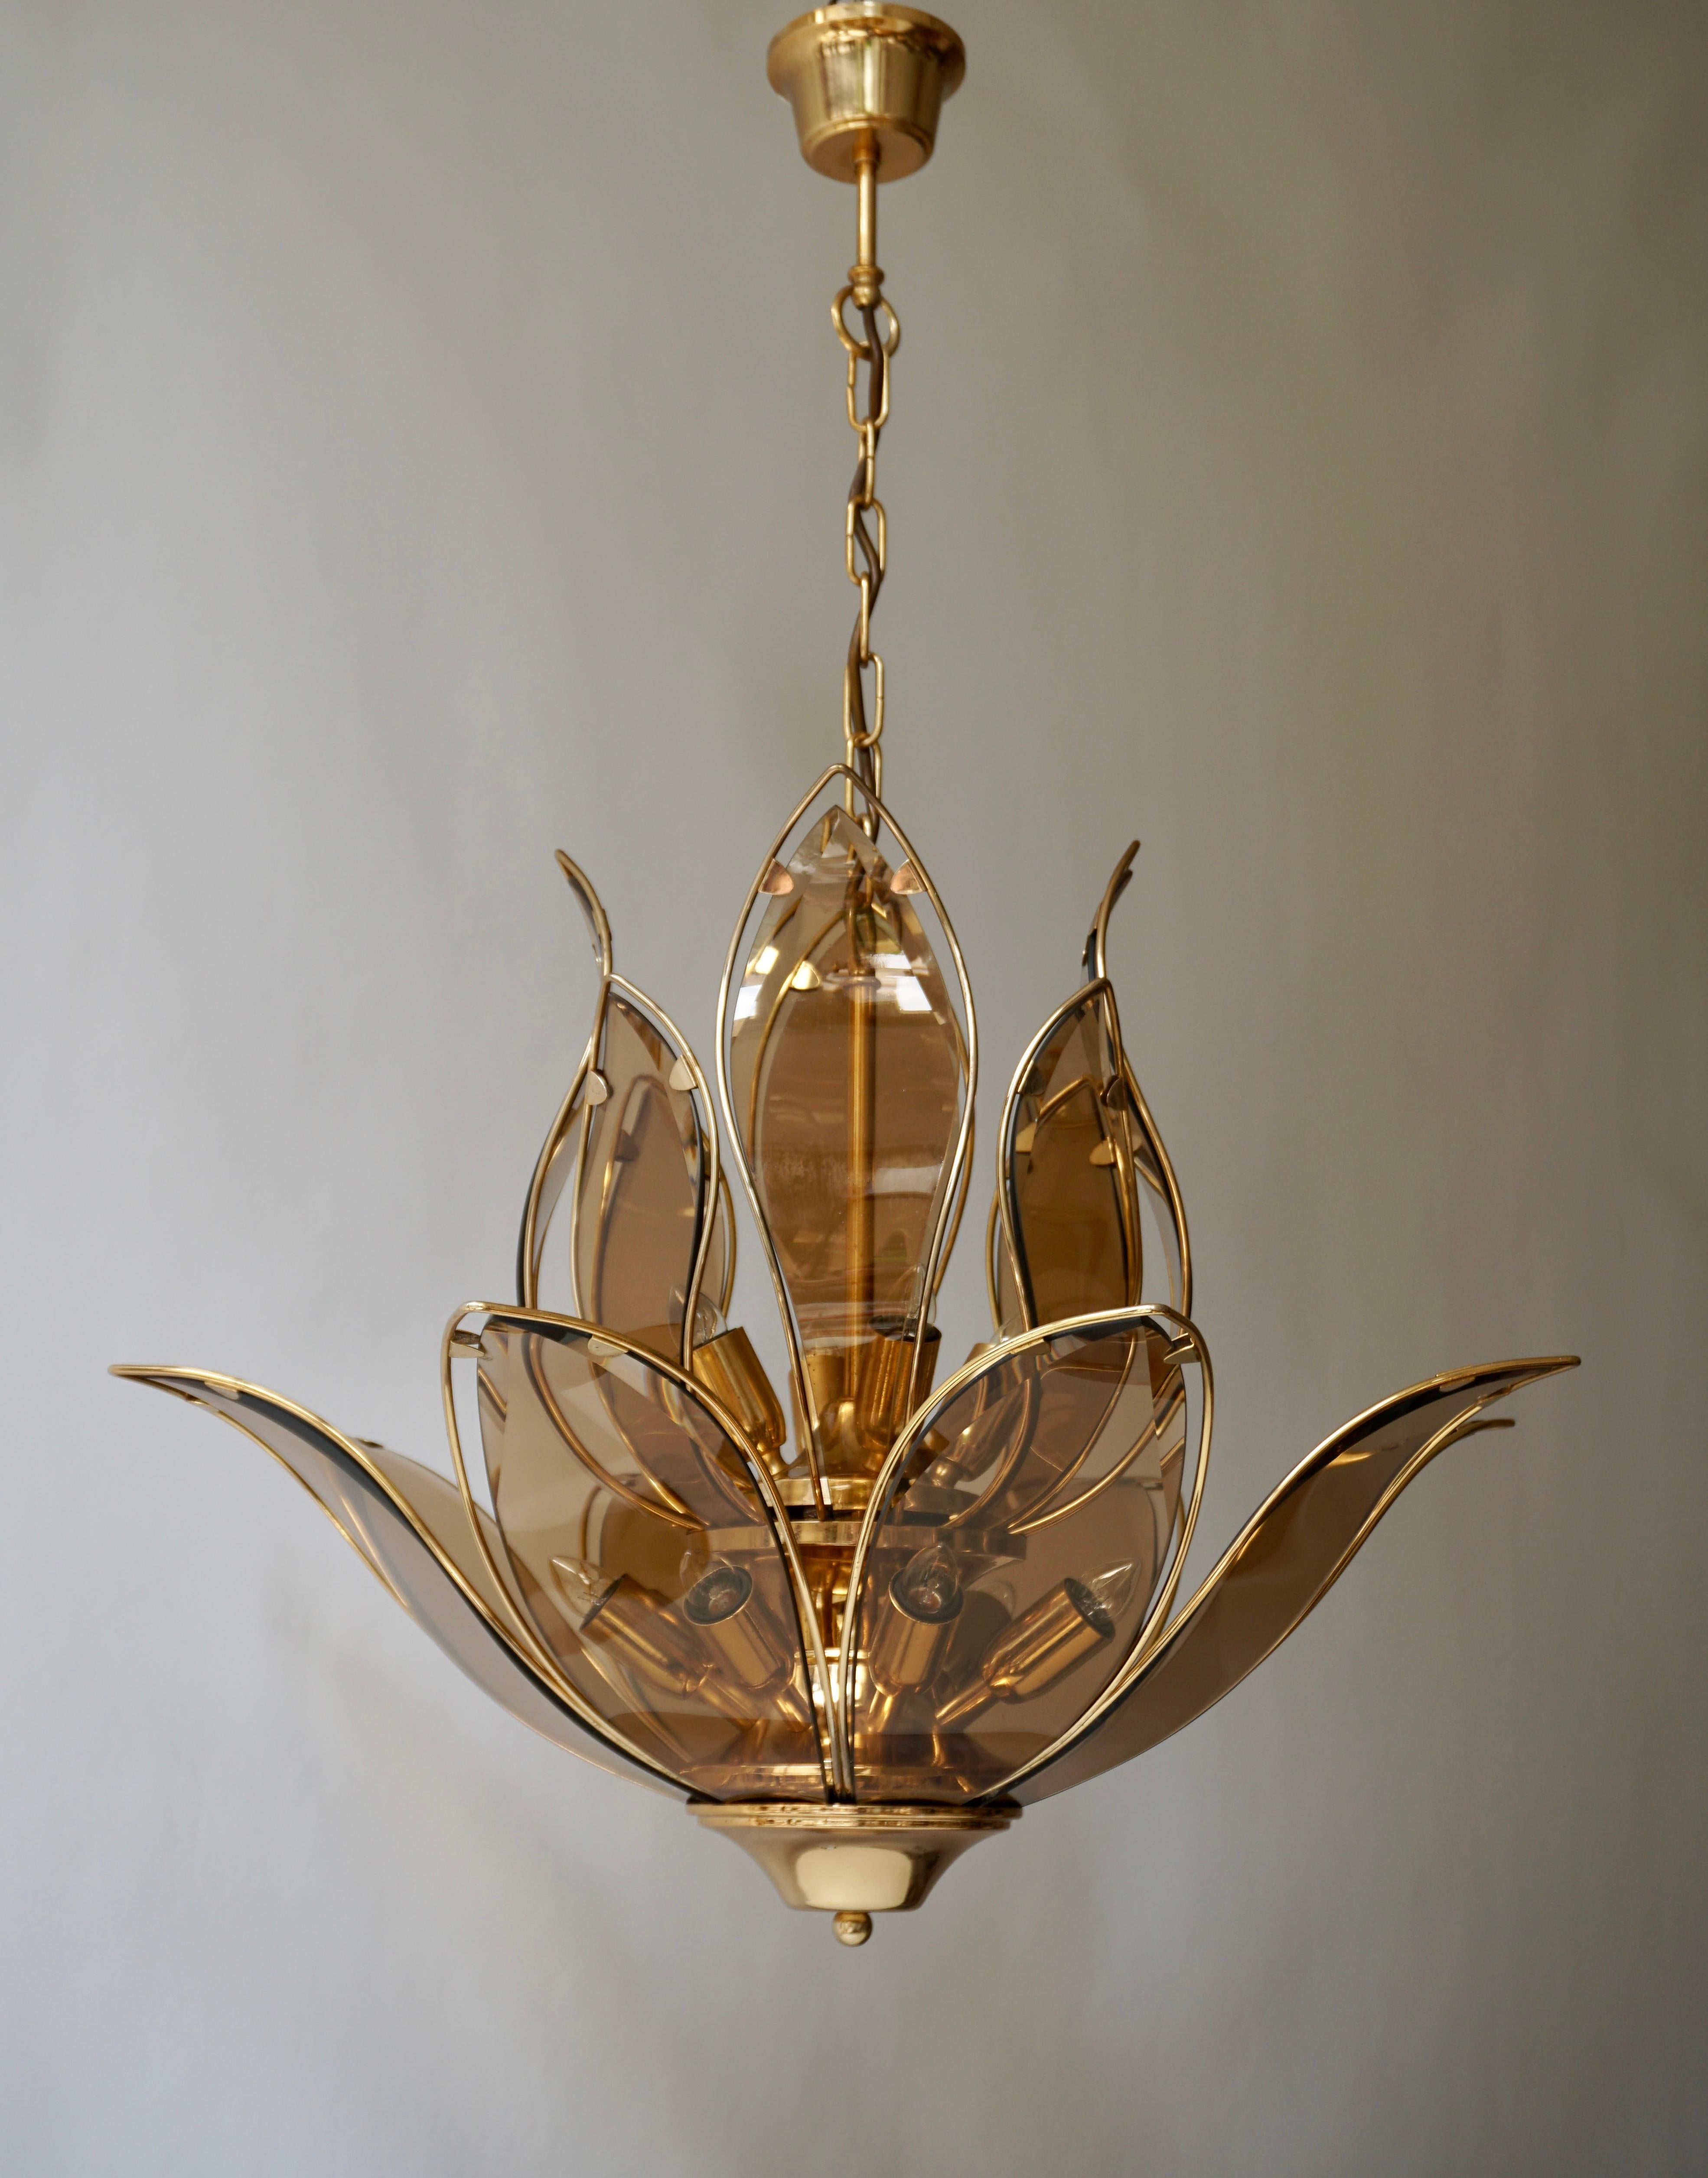 Trois lustres exceptionnels et très élégants en laiton et verre de Murano en forme de fleur de lotus de très bonne qualité. Ce lustre date des années 1970 et est d'origine italienne. 

Le luminaire nécessite douze ampoules à vis E14 (60Watt max.)